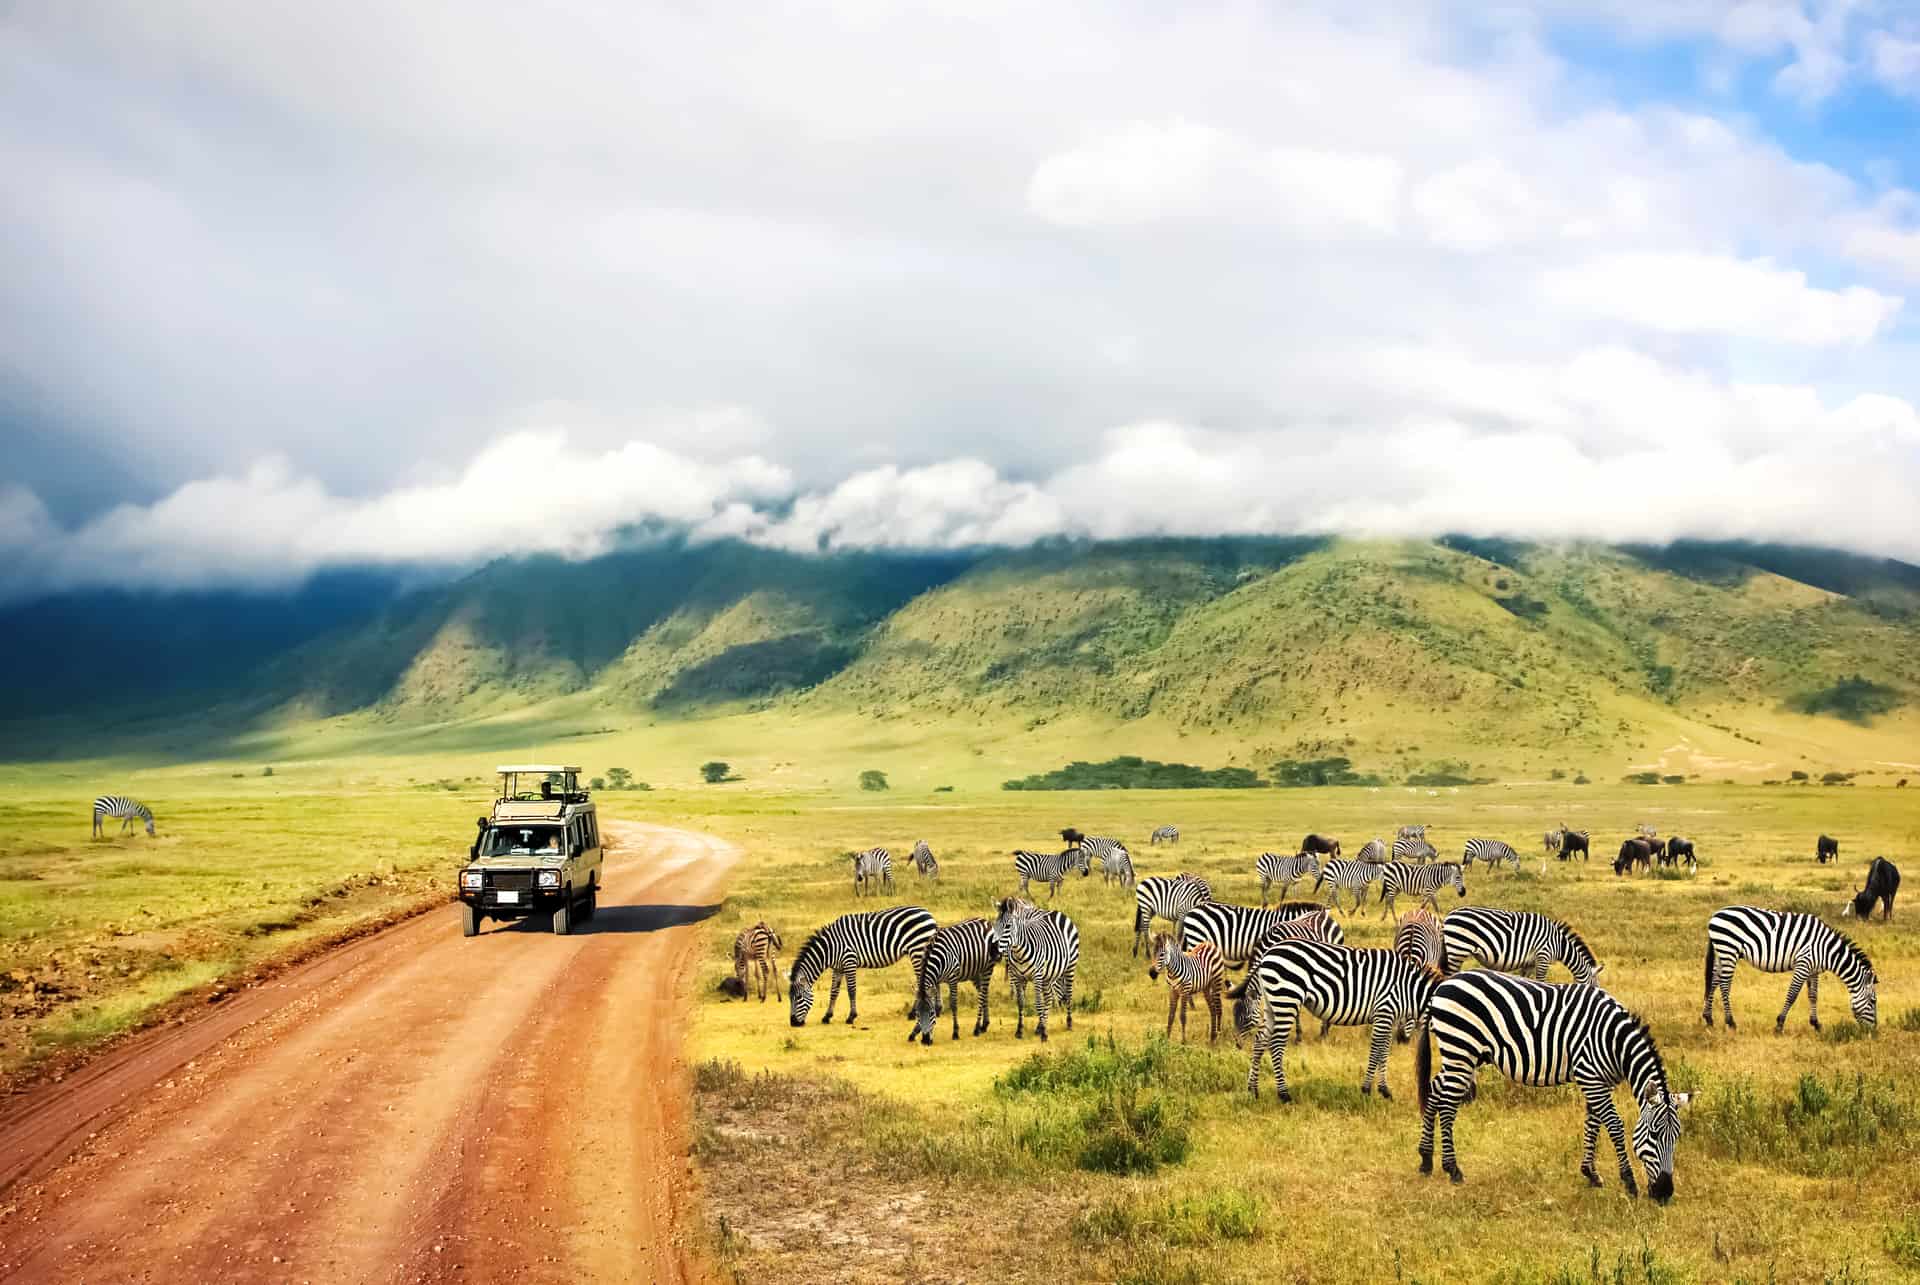 go on safari in africa